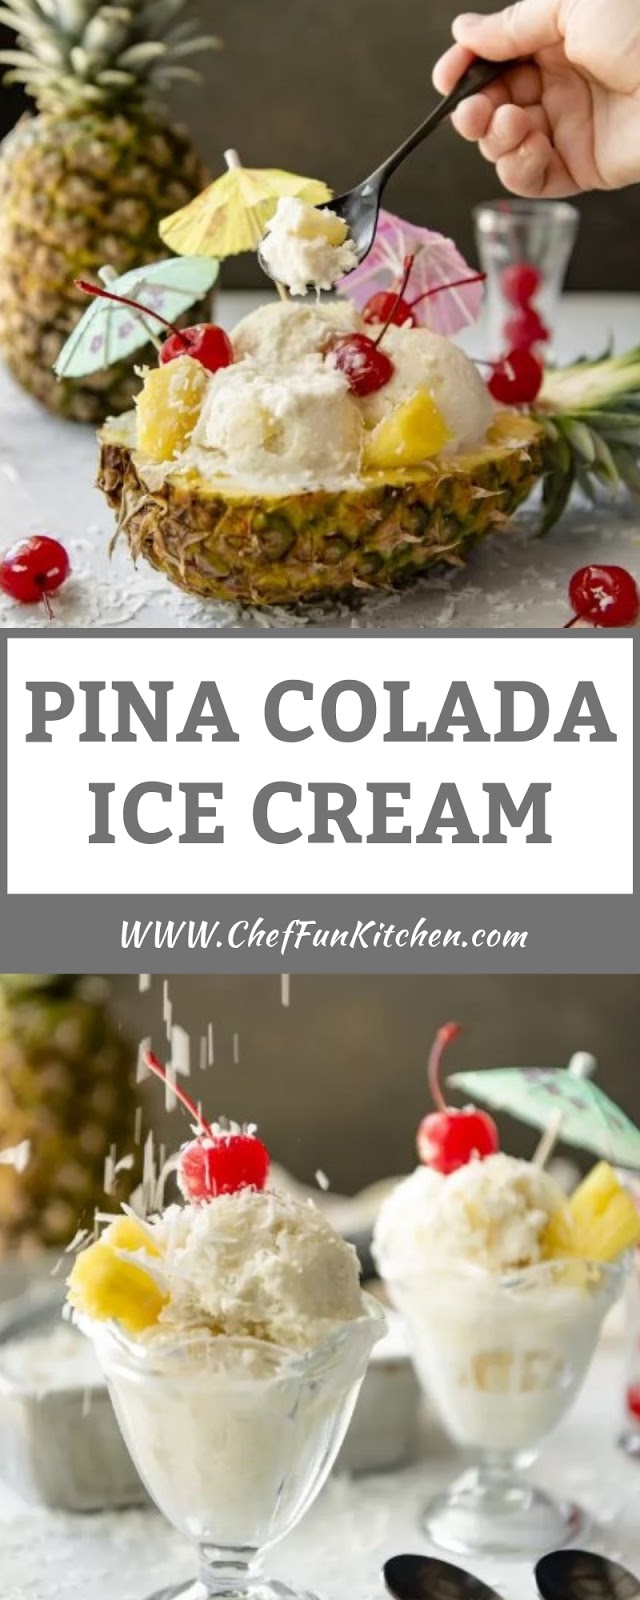 PINA COLADA ICE CREAM